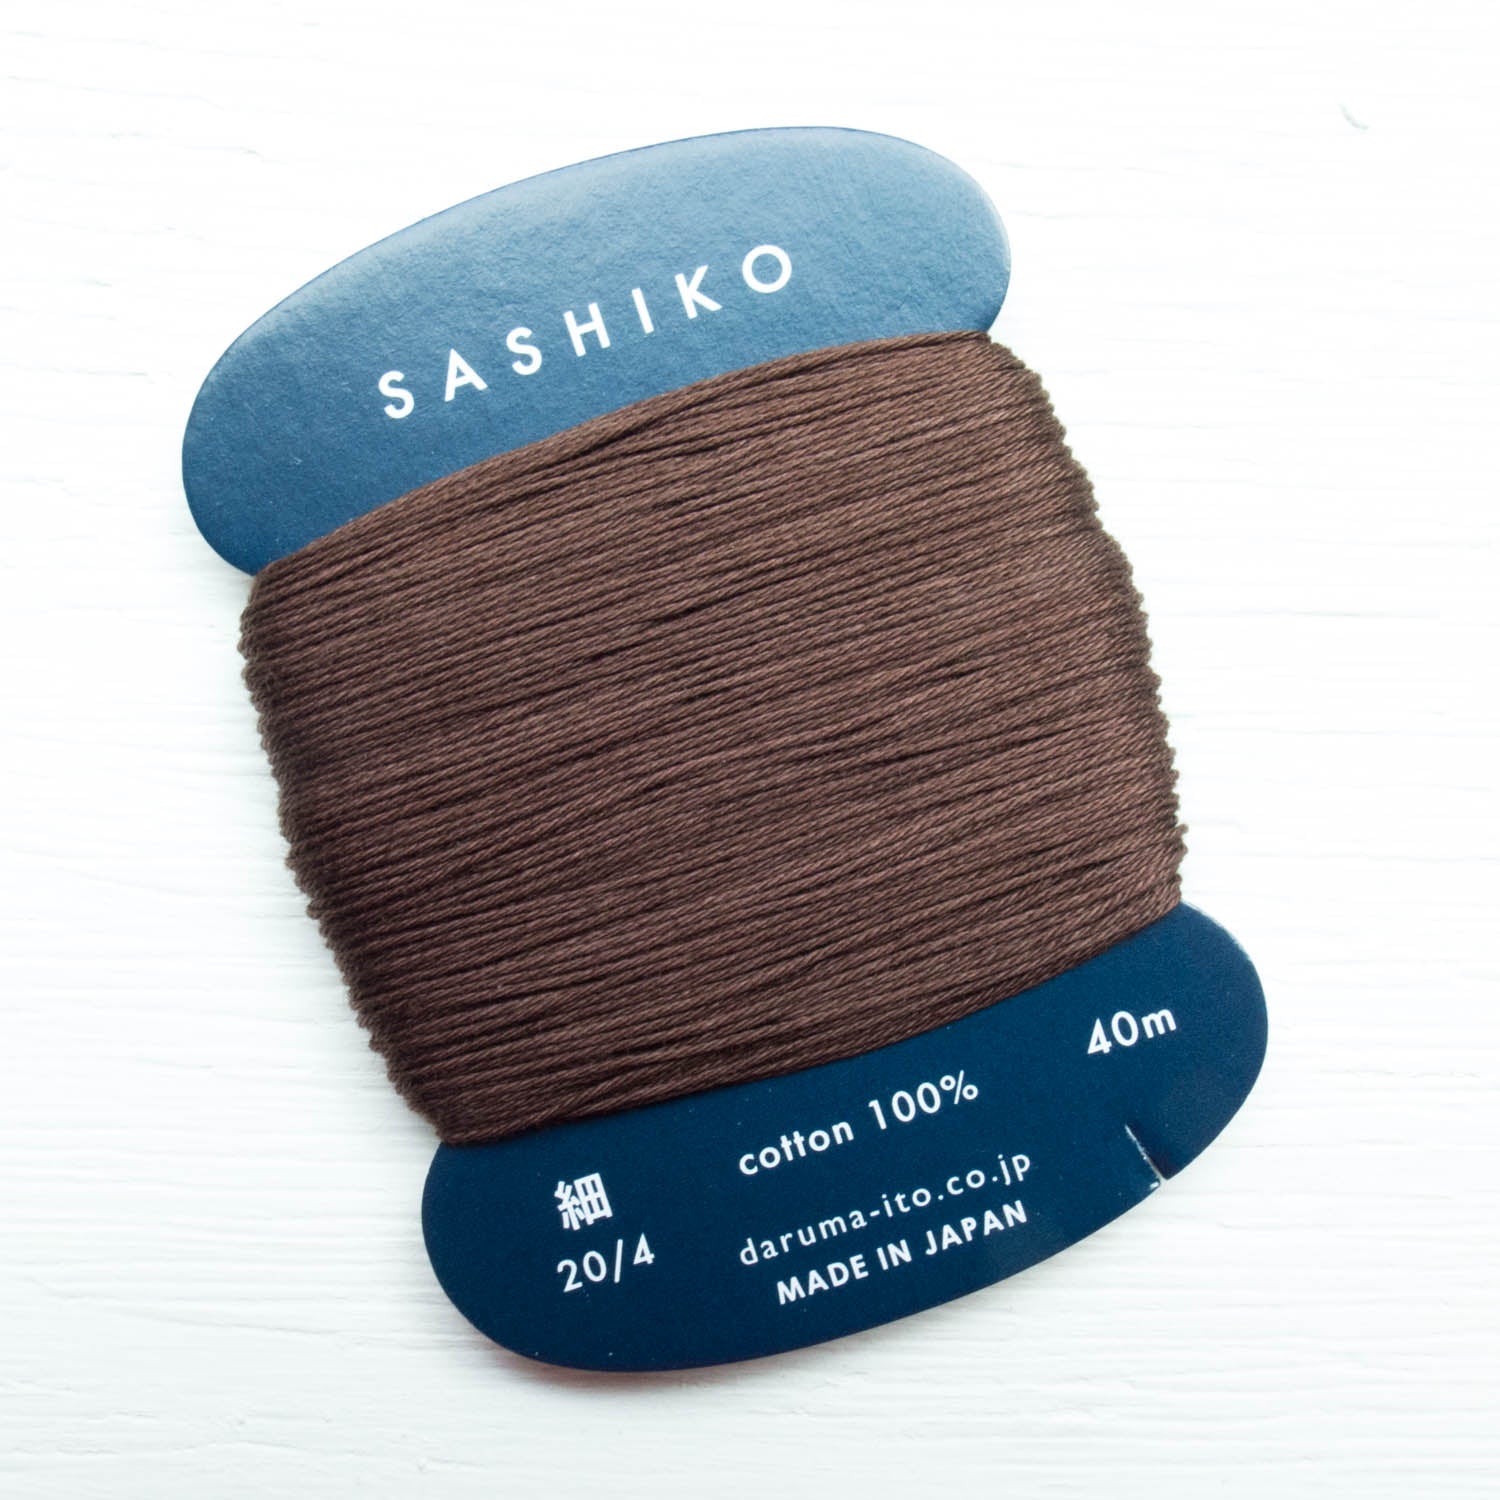 ORIM - Daruma - Sashiko Cotton Thread 20/4 - 0218 - Brown